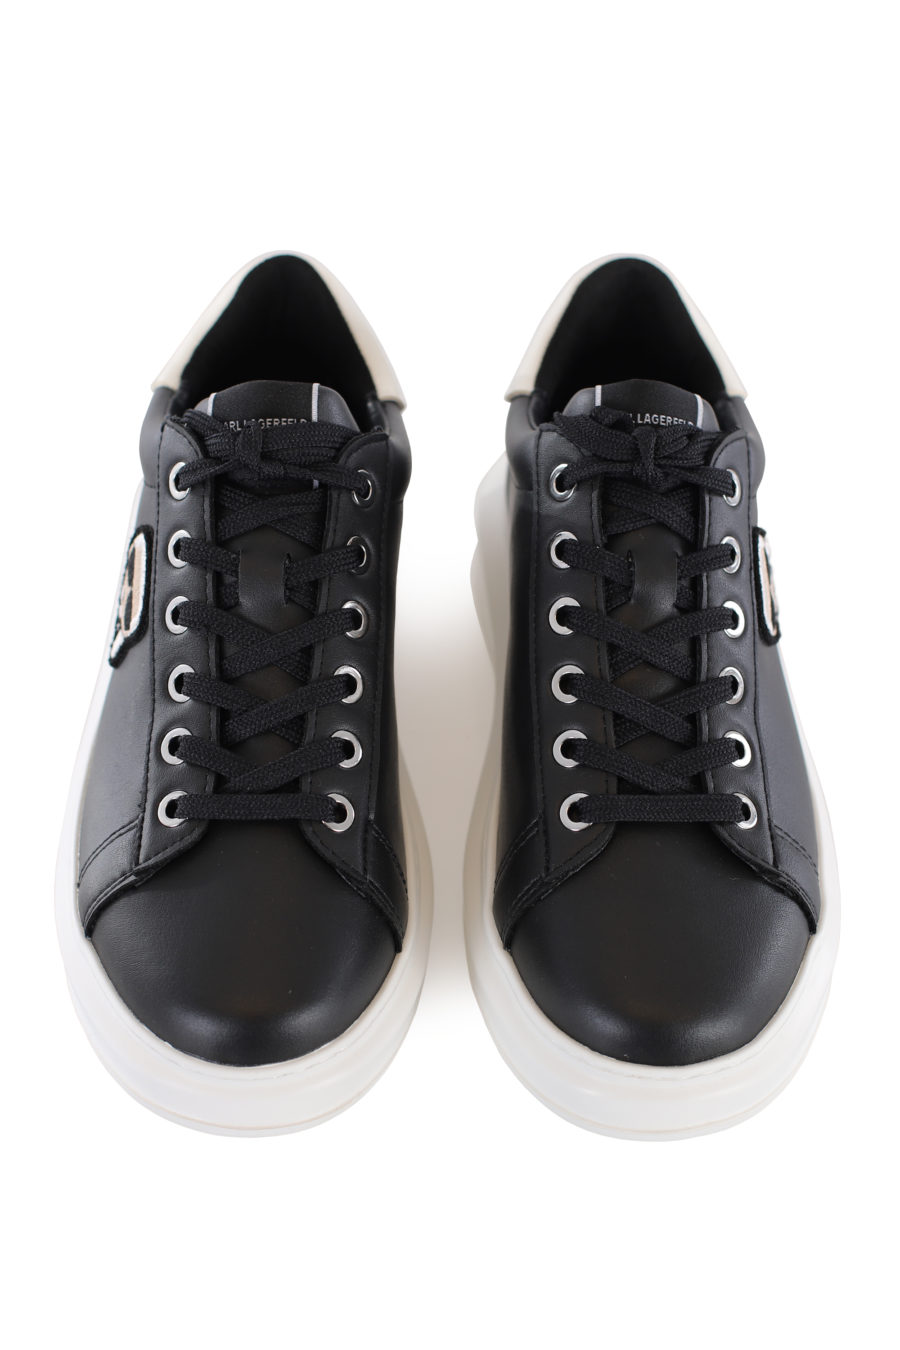 Zapatillas negras con plataforma blanca y logo en parche - IMG 1659 1